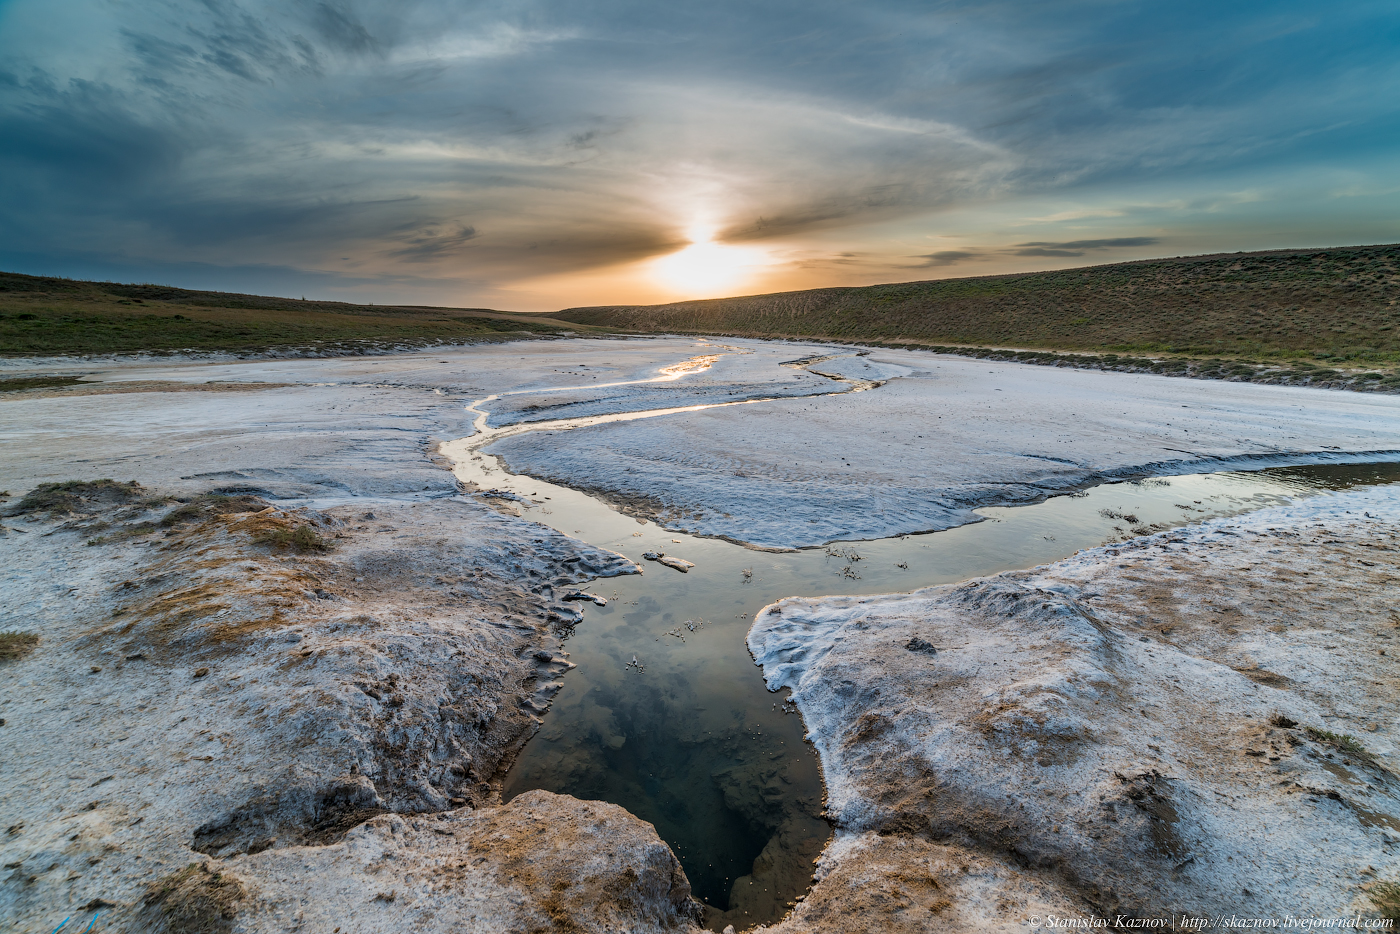 Озеро баскунчак в астраханской области. Озеро Баскунчак соль. Солёное озеро в Астраханской области Баскунчак. Озеро Баскунчак Ахтубинский район, Астраханская область. Астрахань соляные озера.